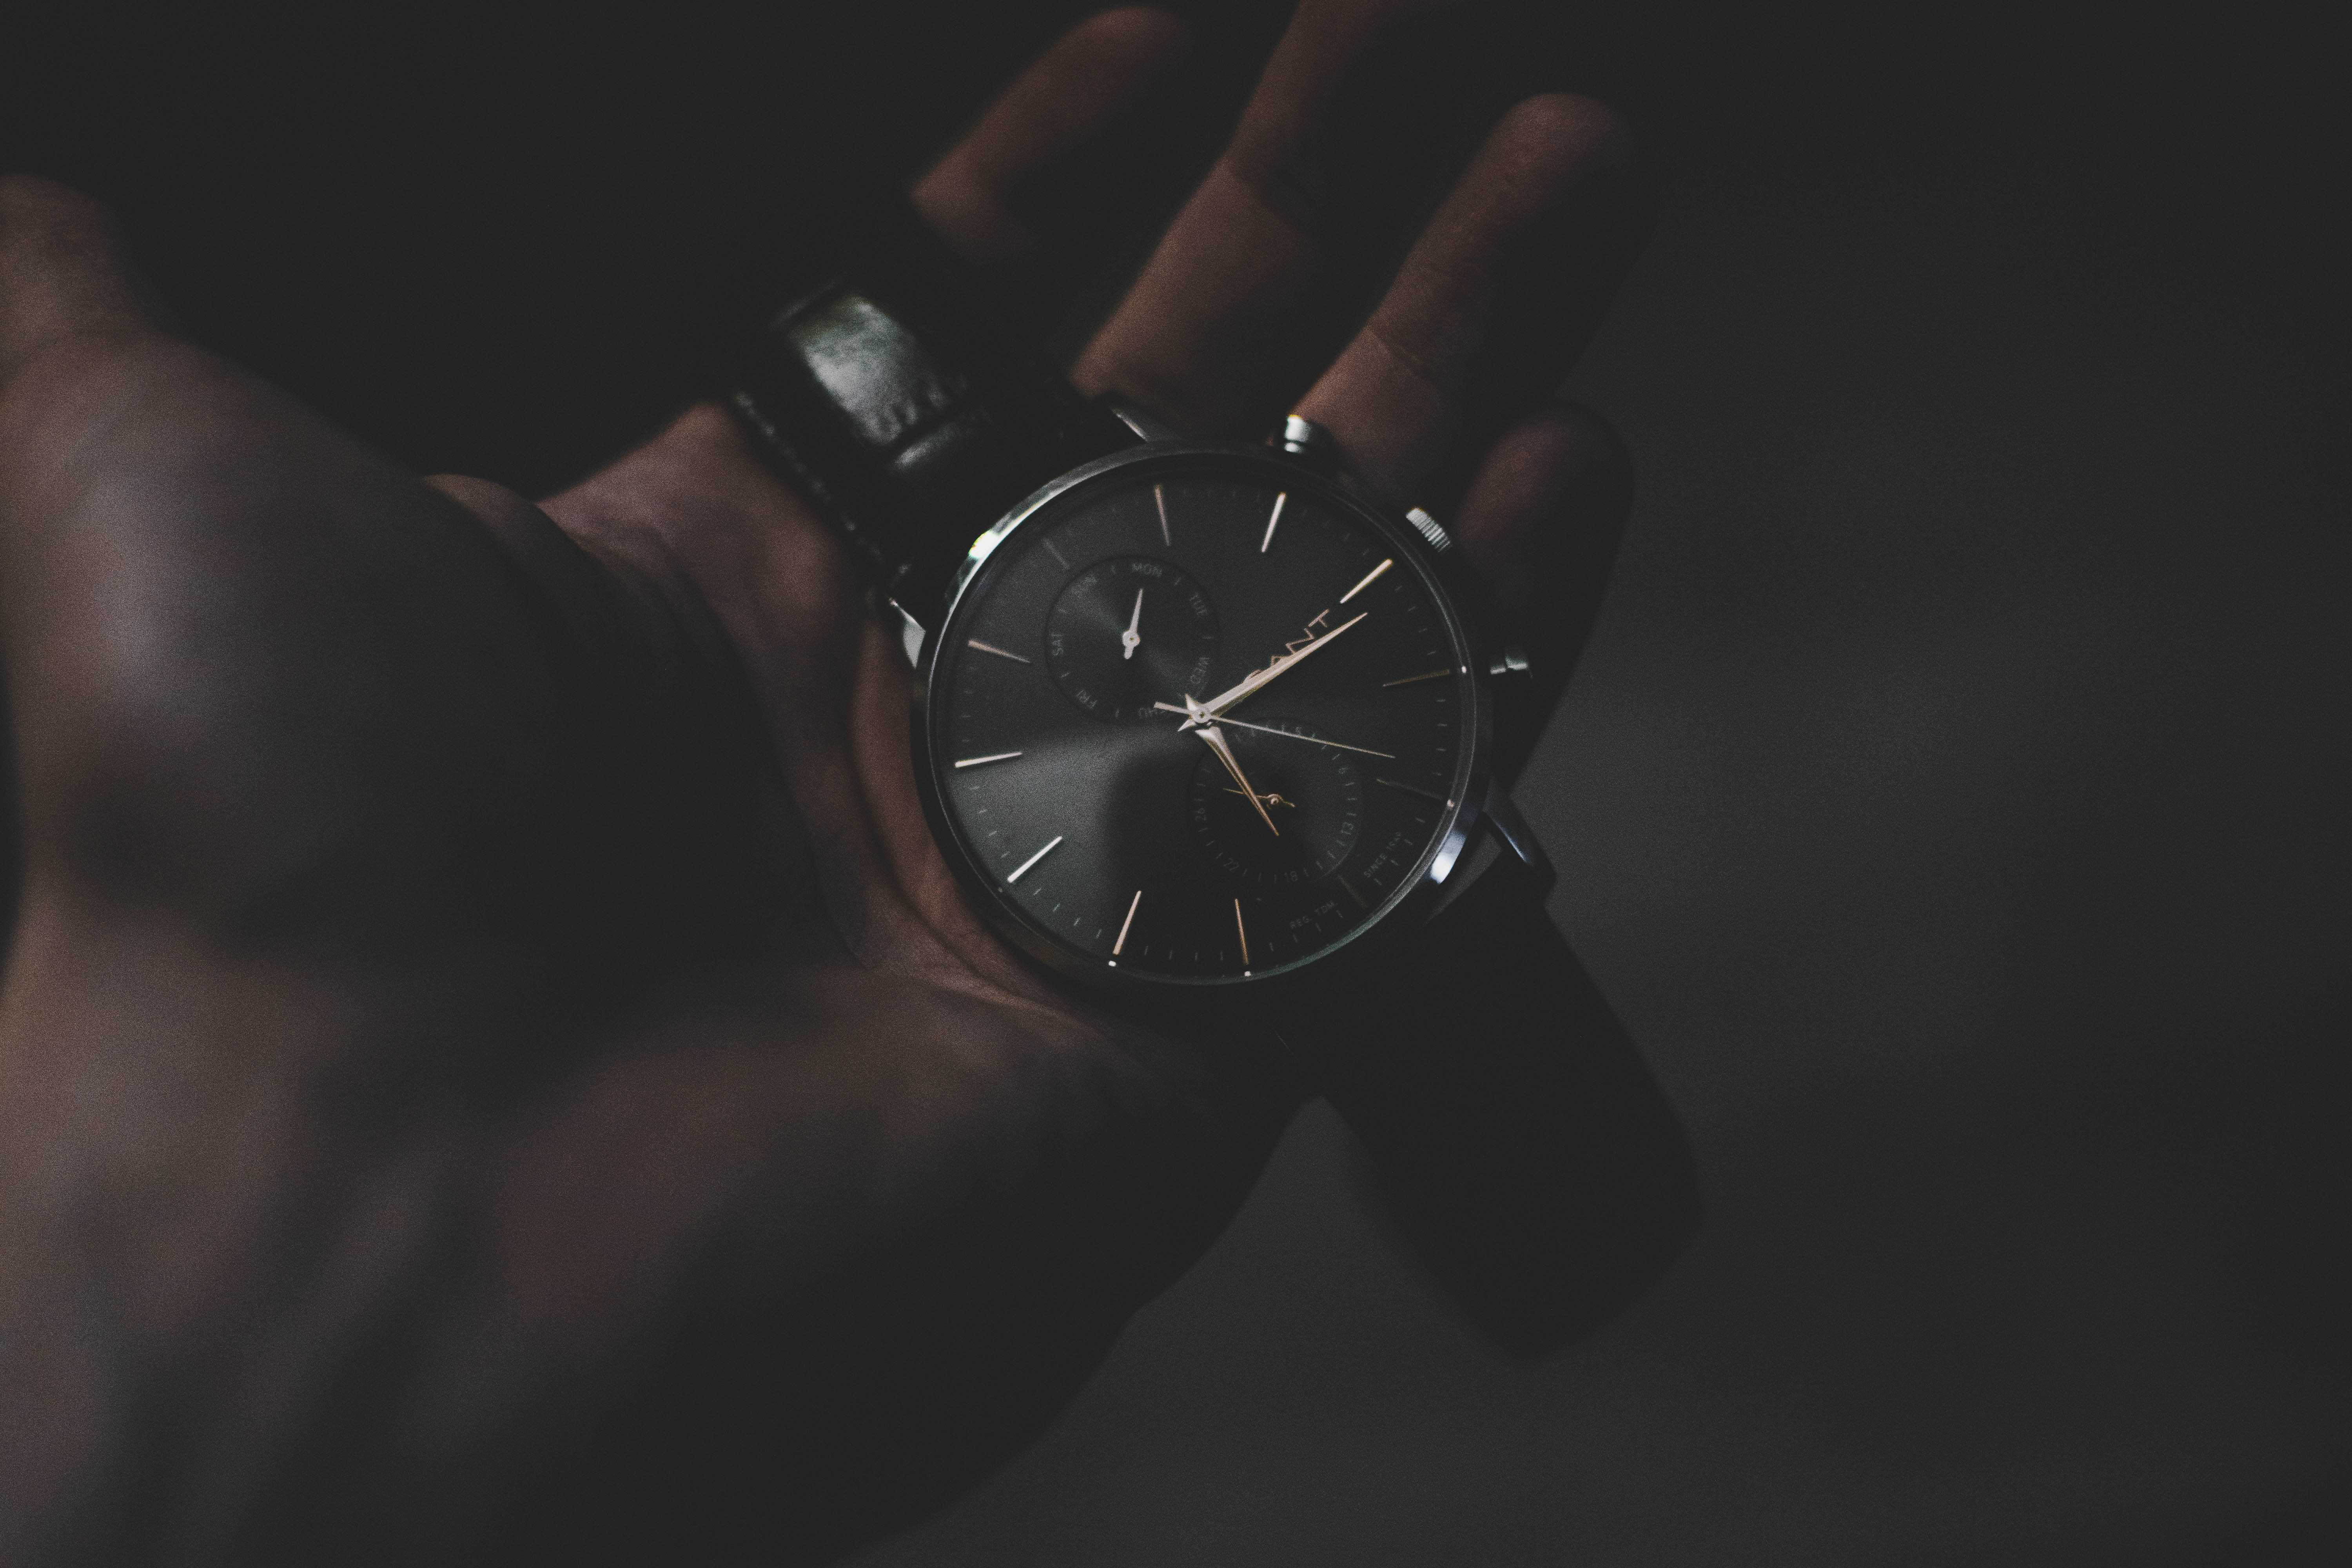 wristwatch, wrist watch, dark, hand, technologies, technology, clock face, dial